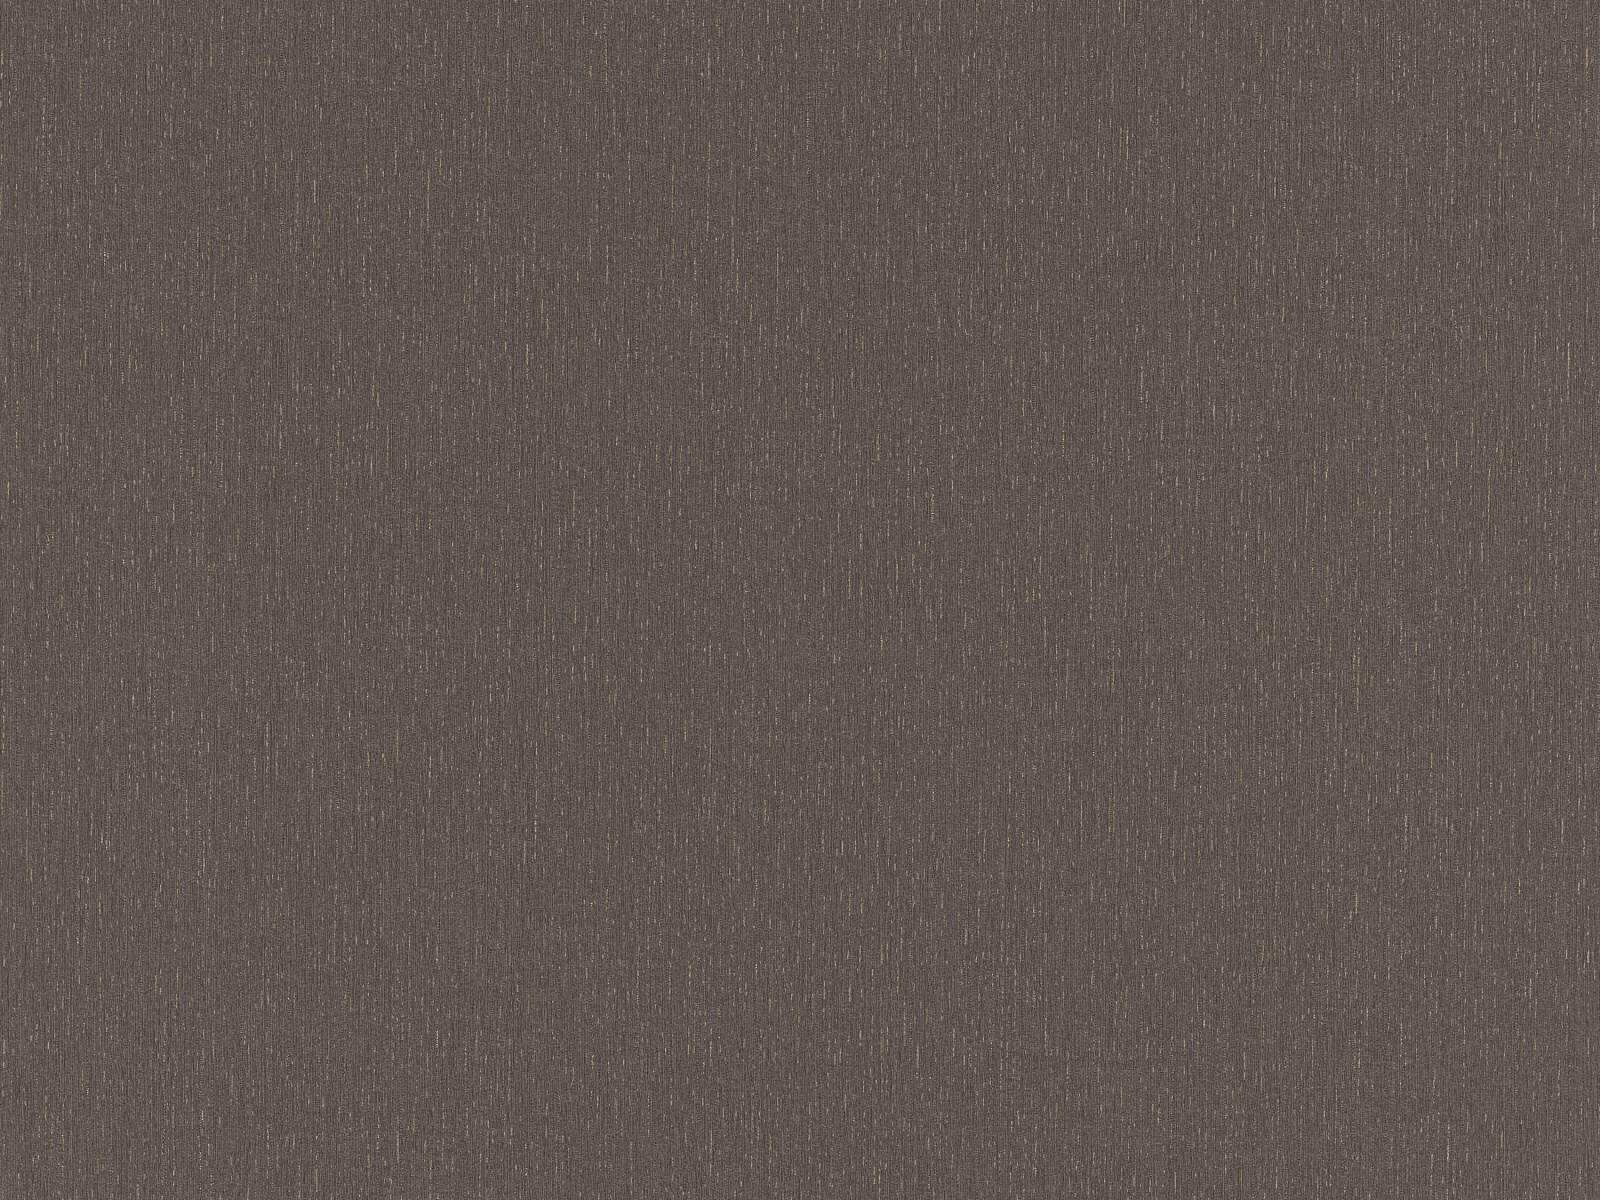 Moderná tapeta s vrytými čiarami imitujúcimi omietku v šedej farbe so zlatým leskom, ER-602182